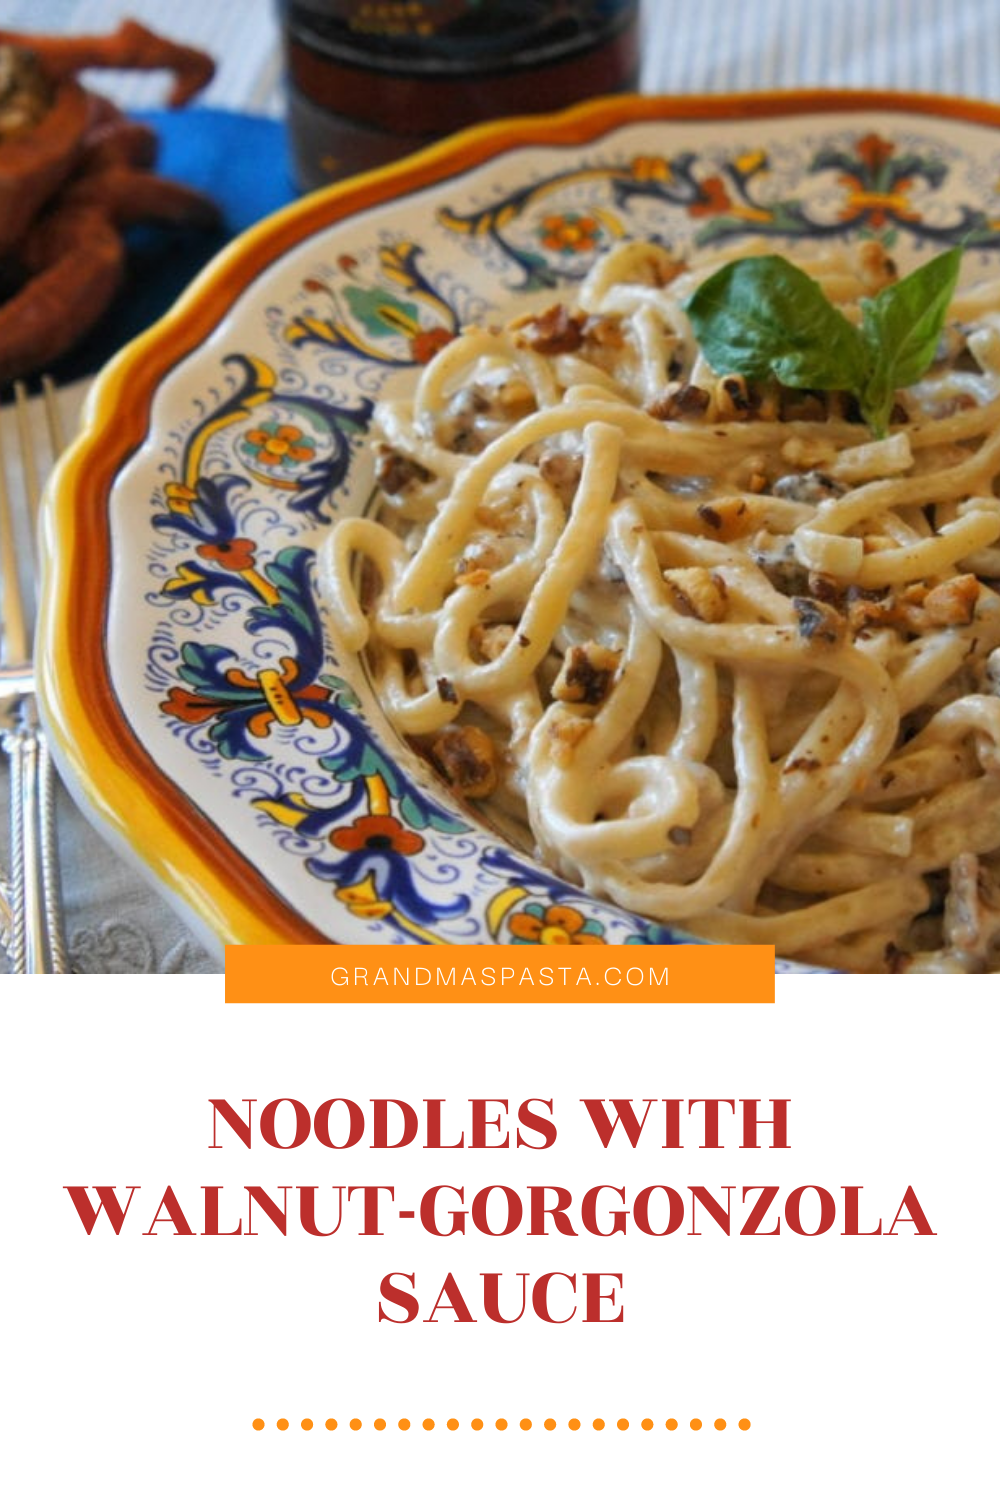 Noodles with Walnut-Gorgonzola Sauce